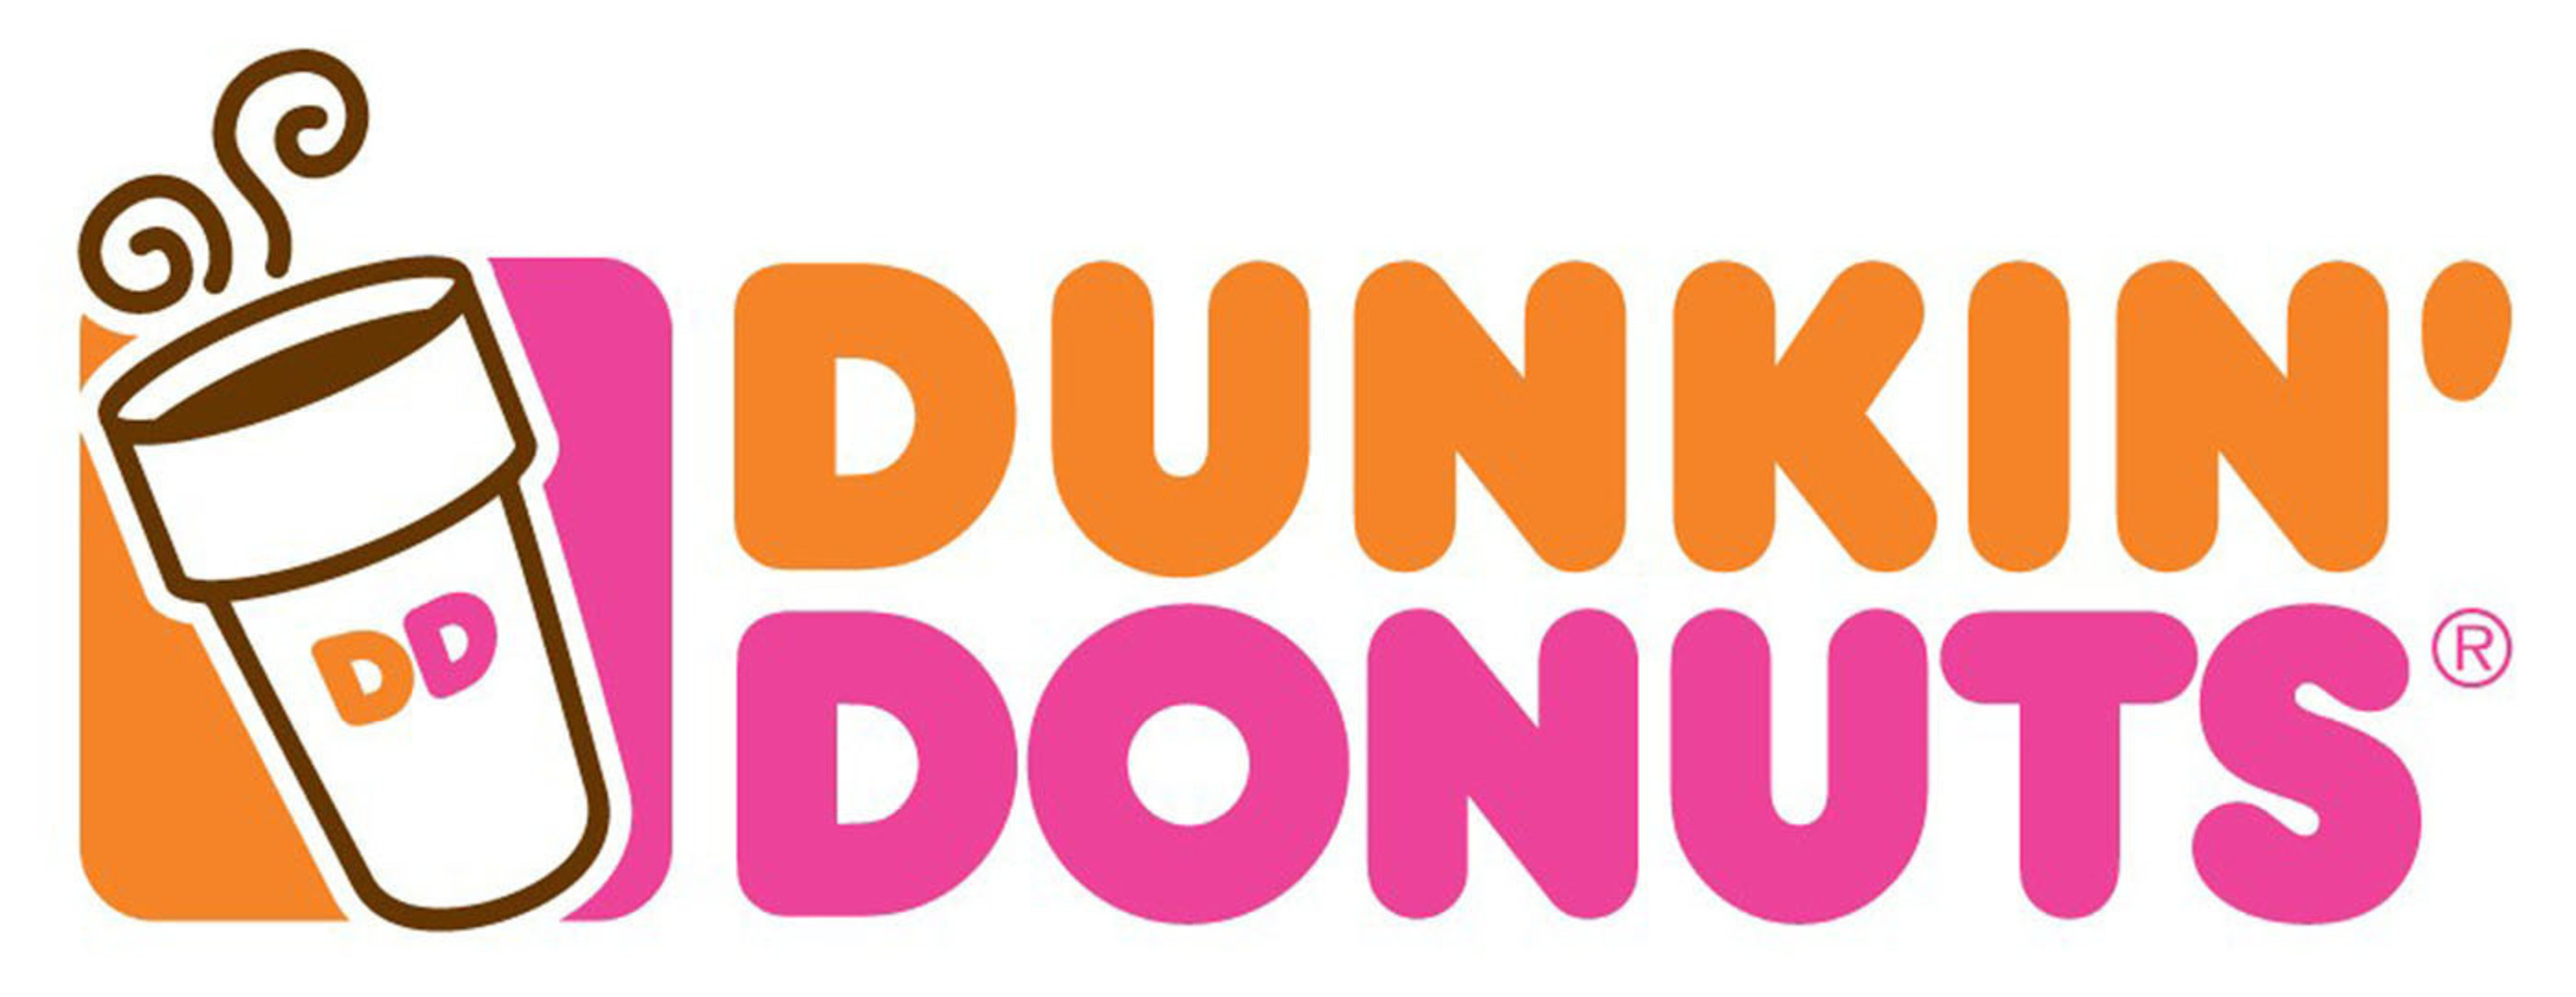 Dunkin' Donuts Hot Logo.